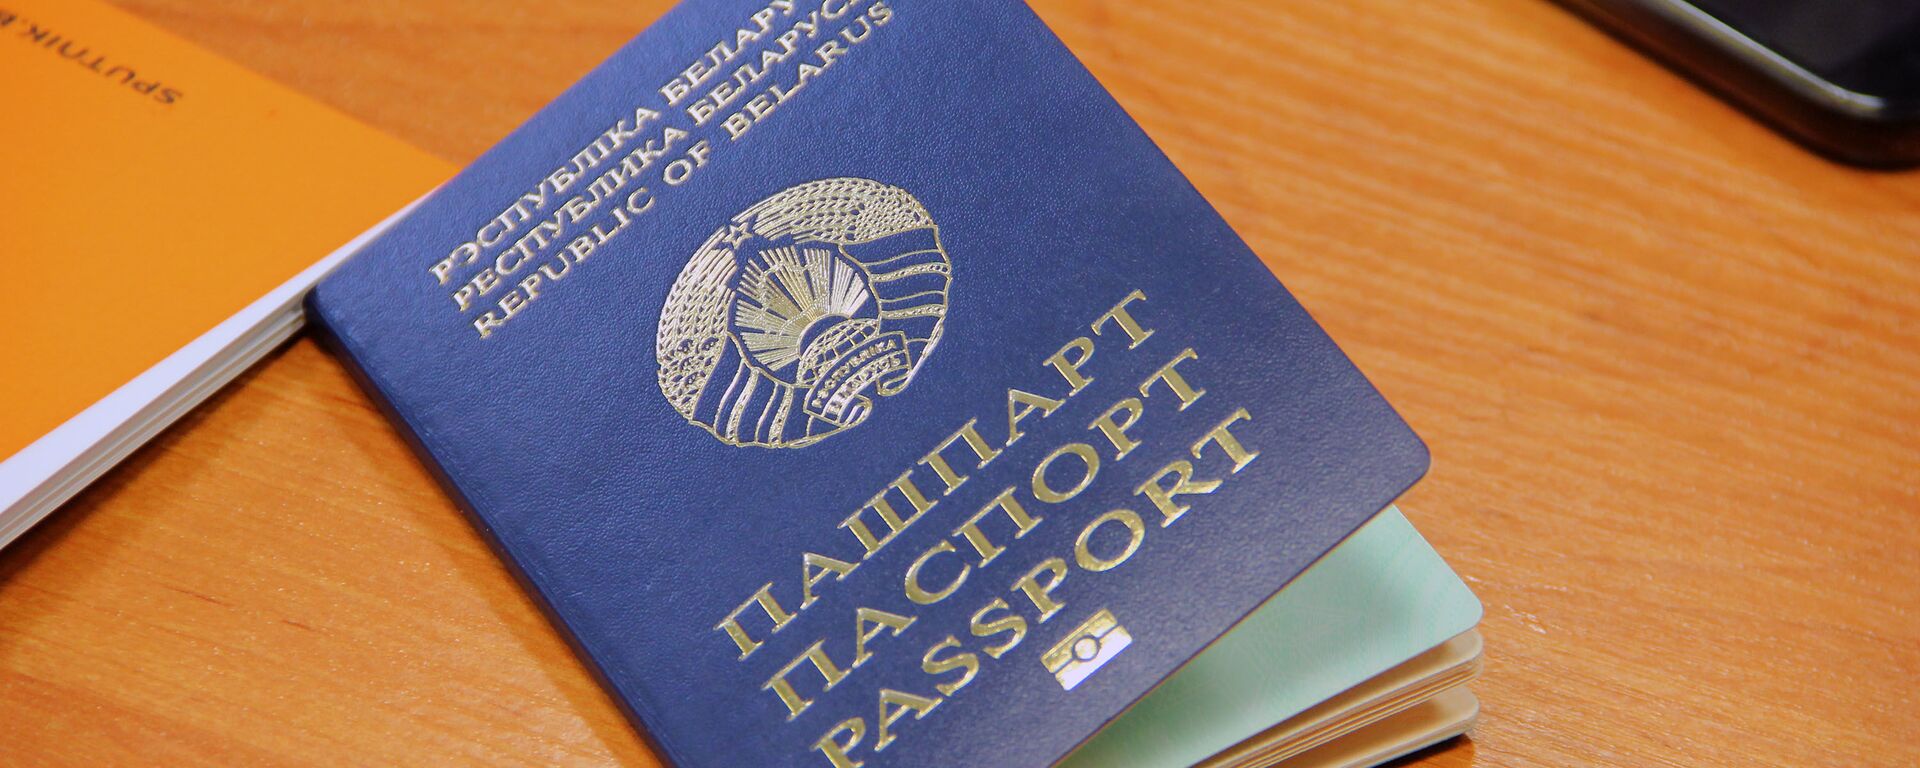 Биометрический паспорт и ID-карты: цена и особенности новых документов - Sputnik Беларусь, 1920, 23.11.2021